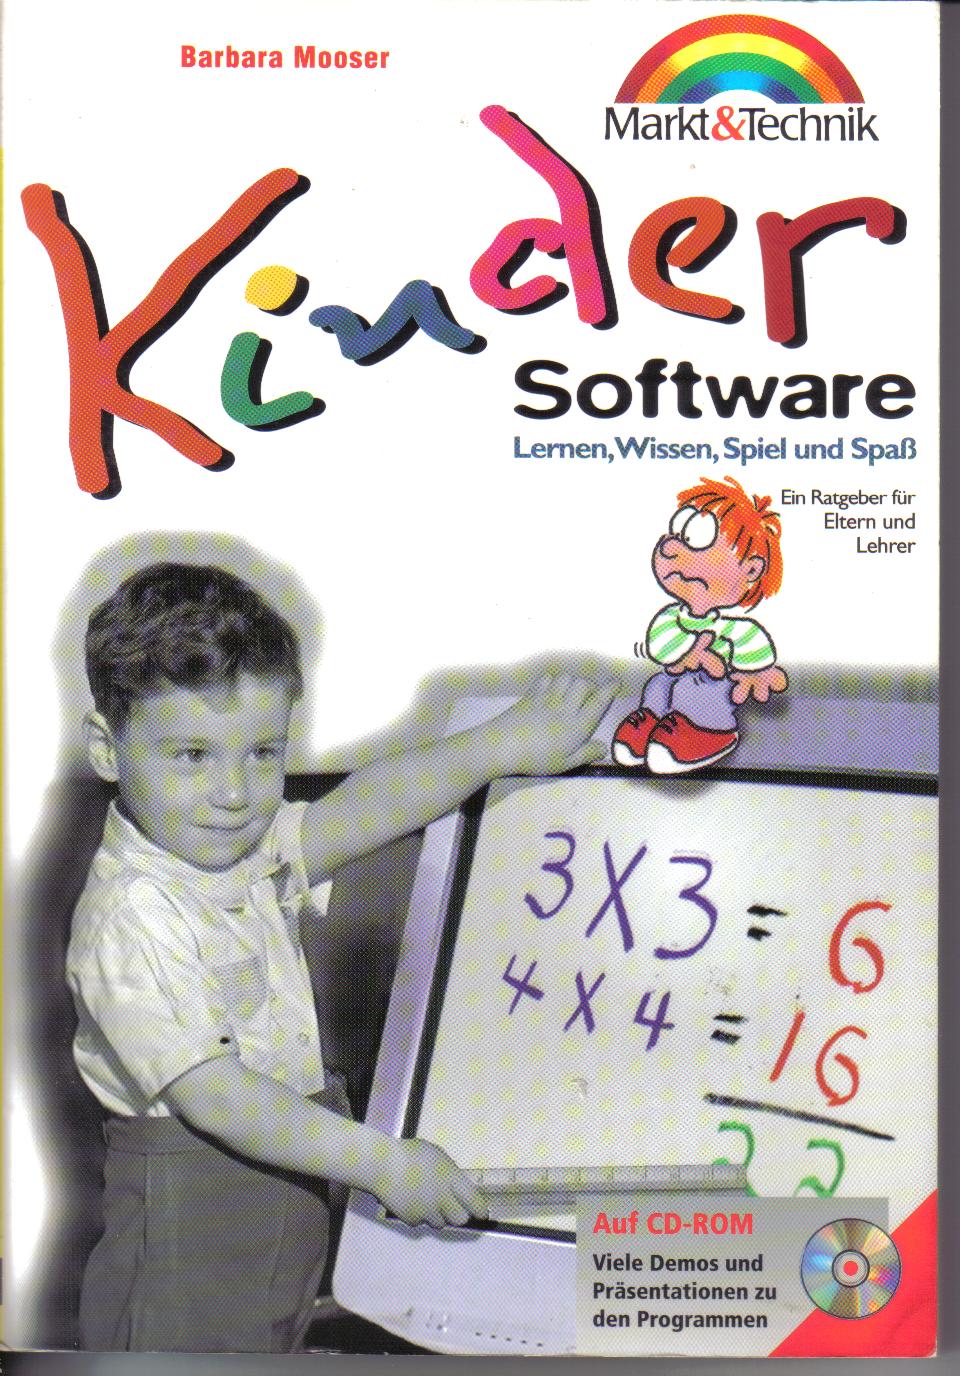 Kinder Software Ein Ratgeber fuer Eltern und LehrerBarbara Mooser